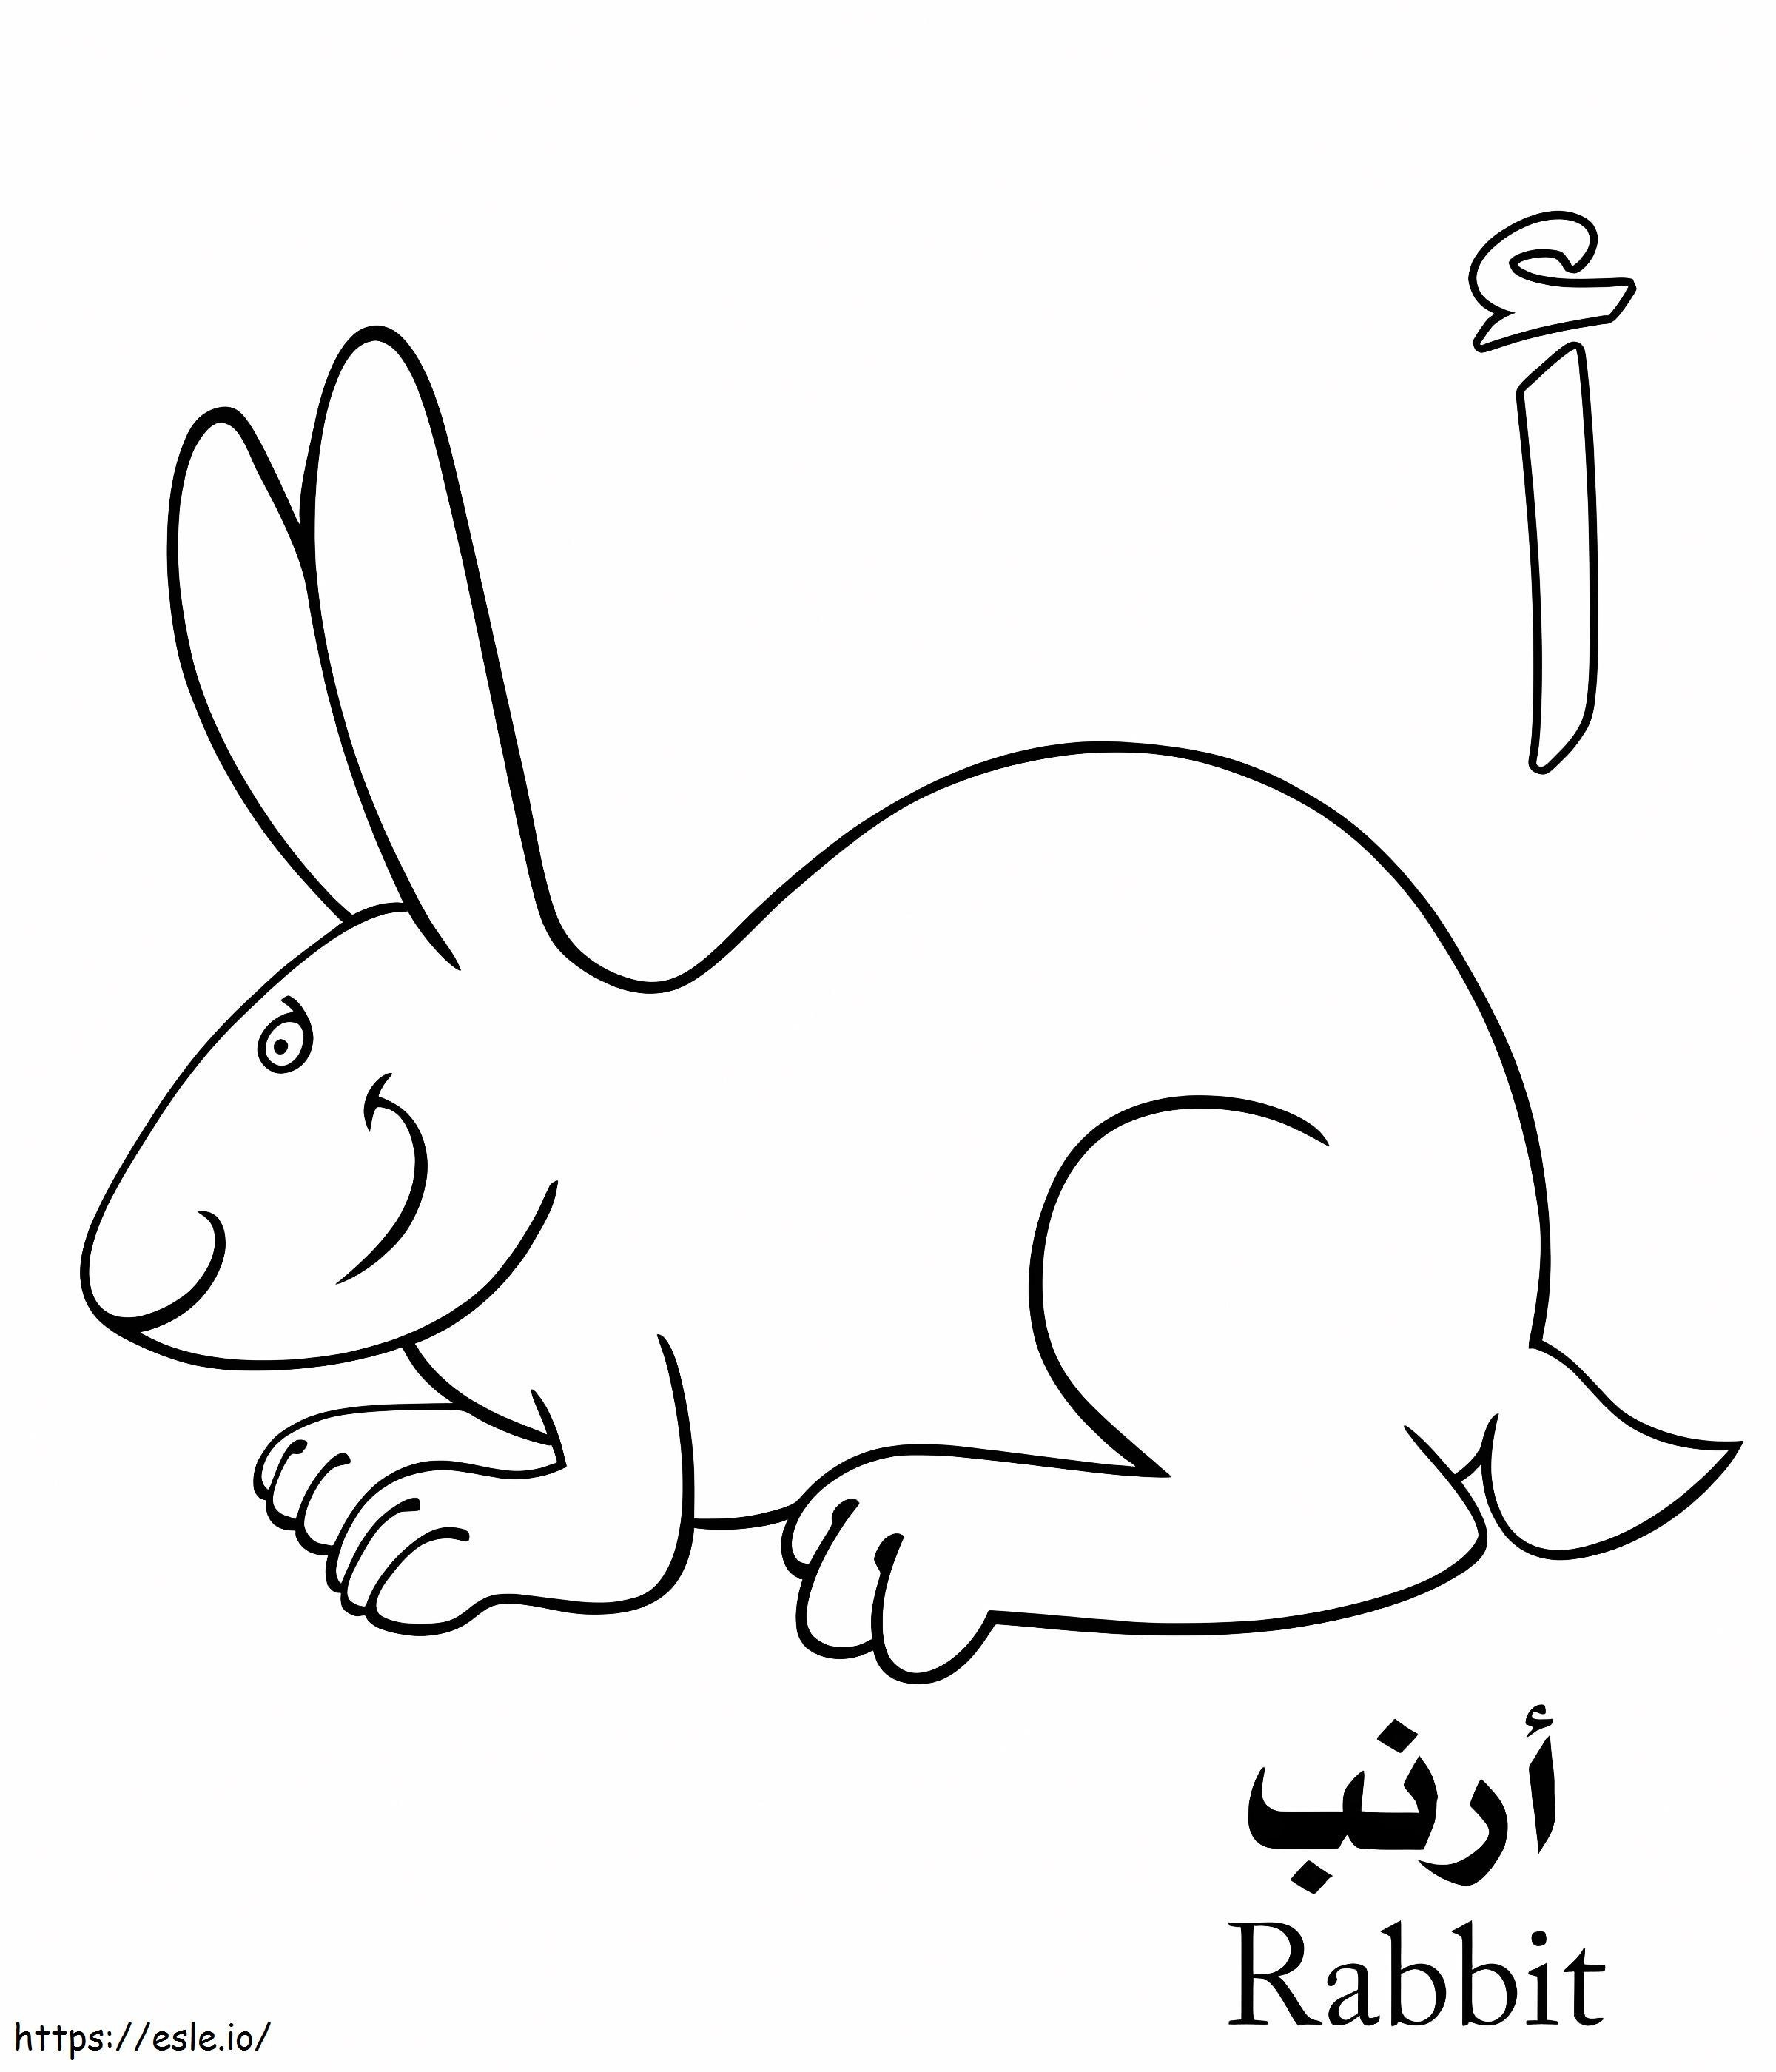 Arabisches Kaninchen-Alphabet ausmalbilder